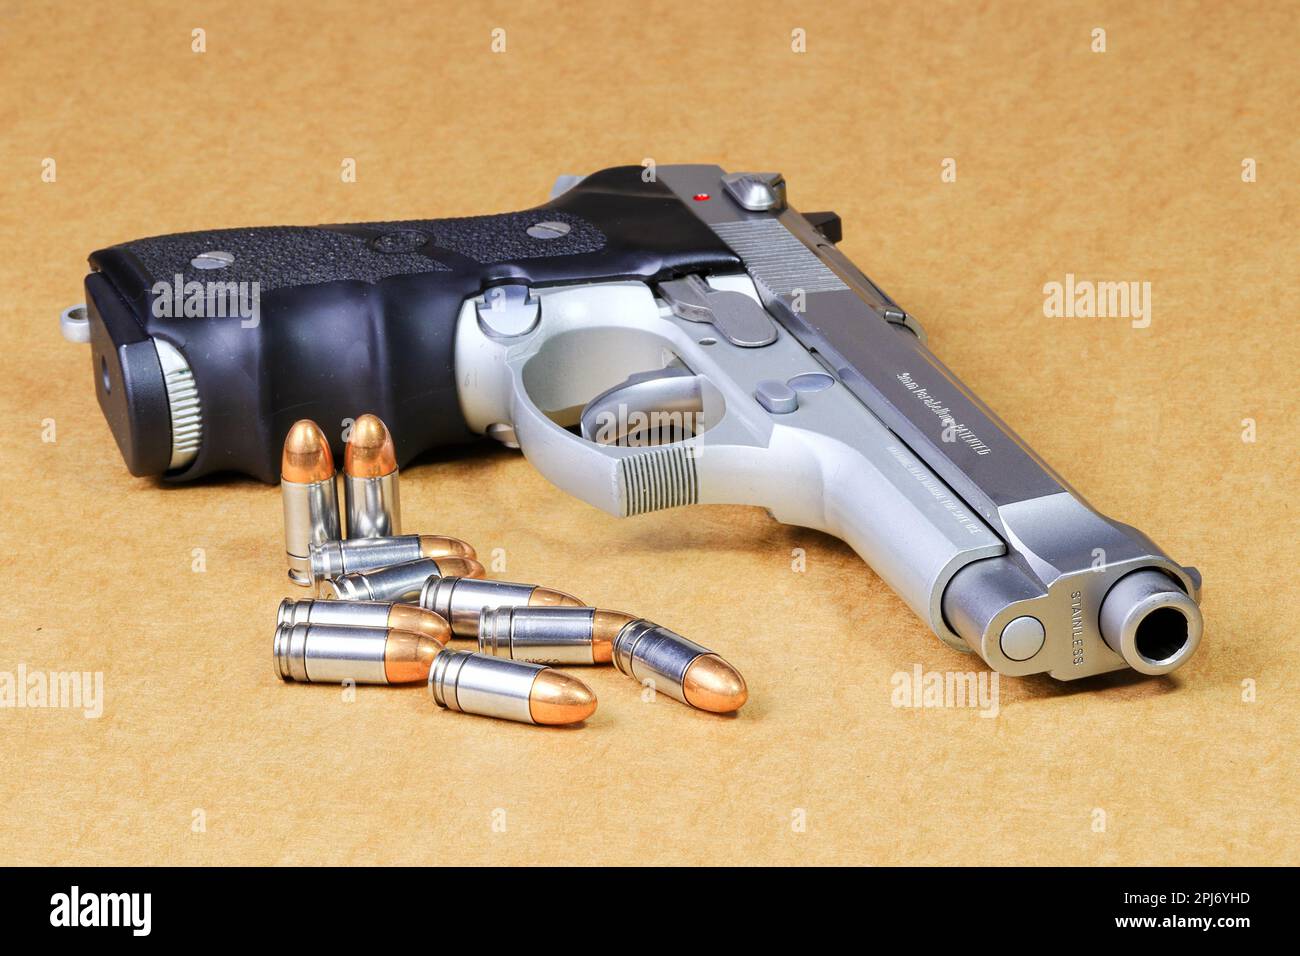 Bala 9mm parabellum y Beretta 92FS, pistola M9 sobre fondo de papel marrón. Foto de stock